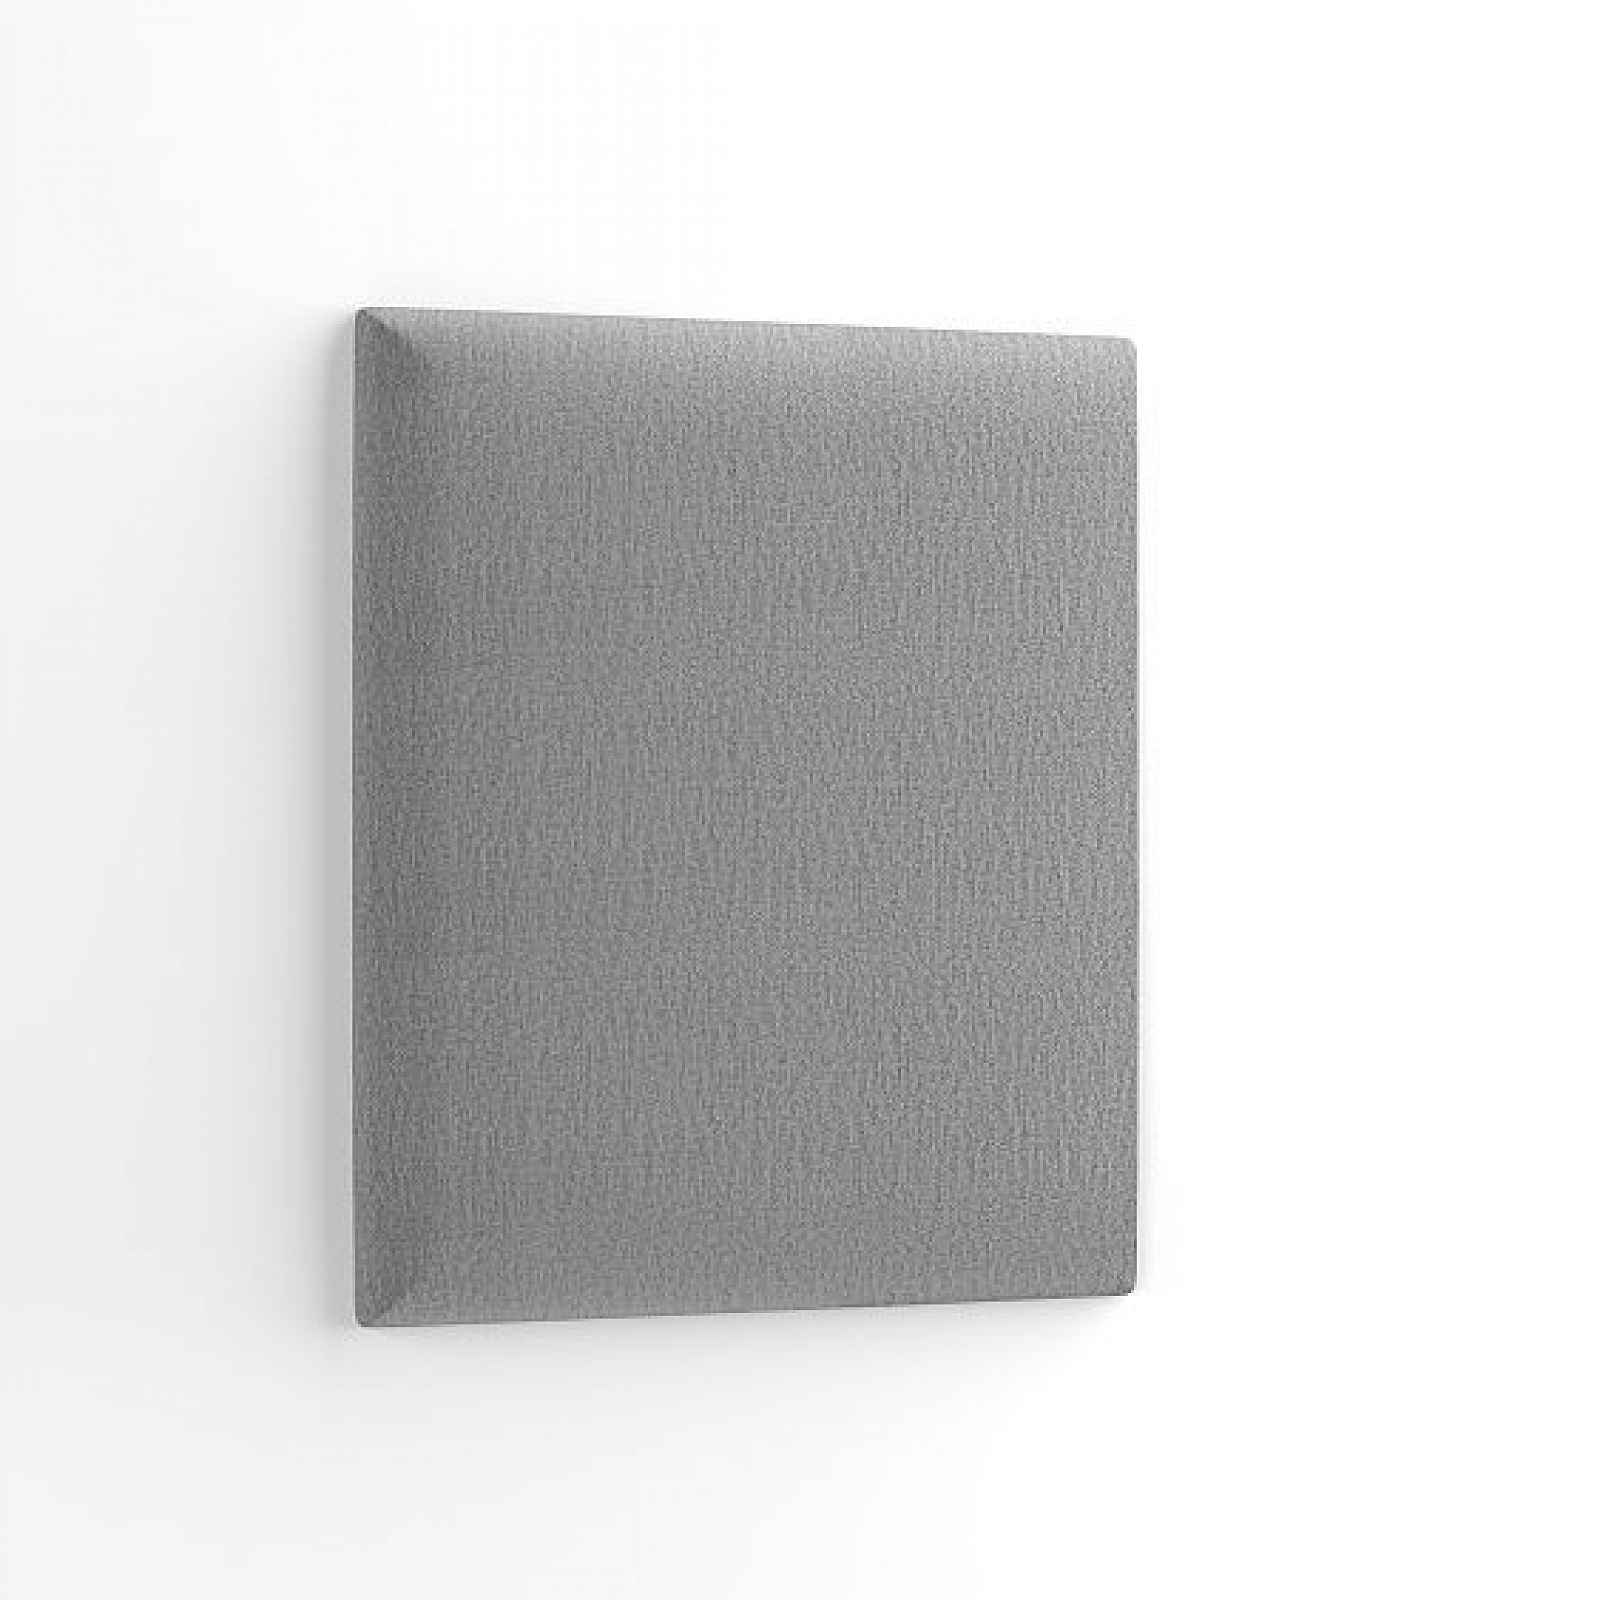 Dekorační nástěnný panel MATEO 50x40 cm, světle šedá